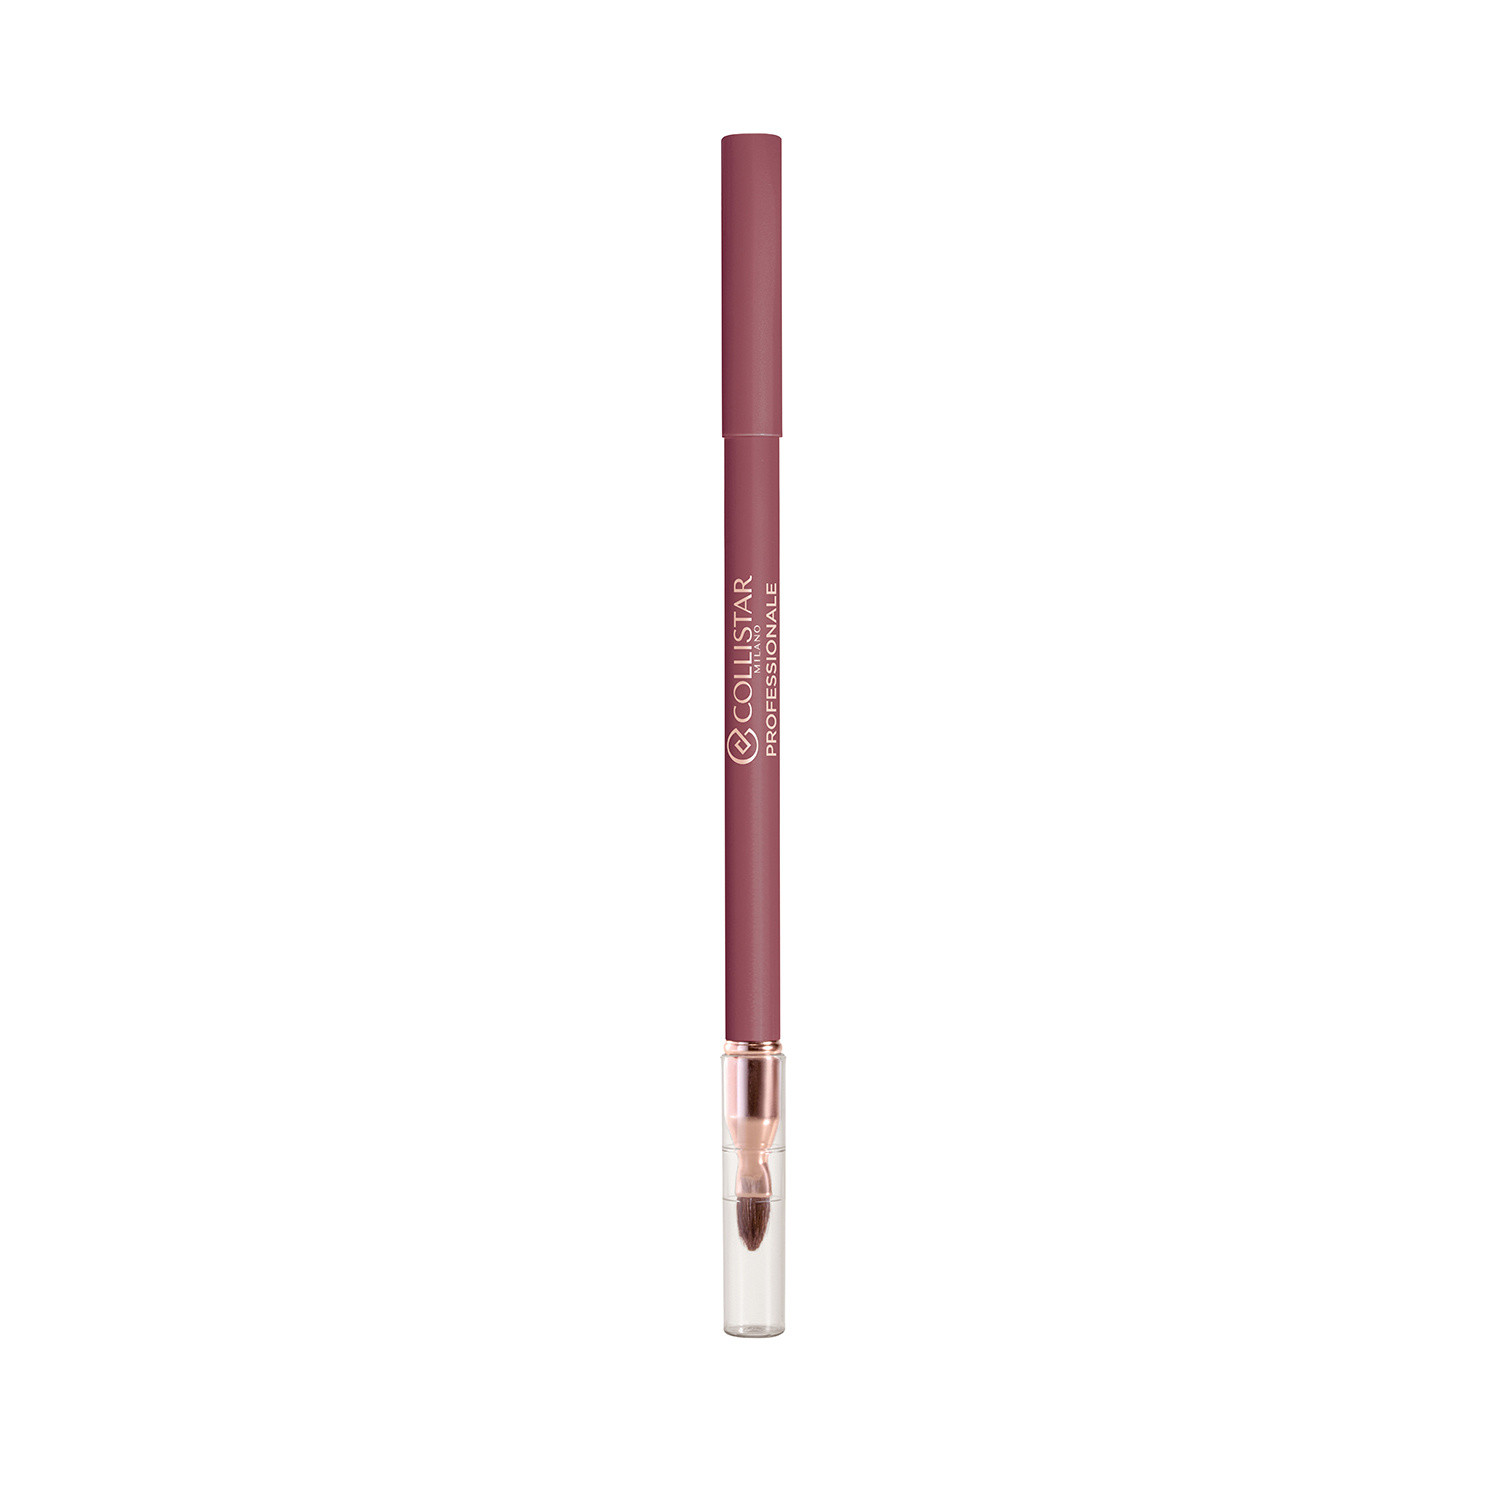 Collistar - Professionale matita labbra lunga durata - 112 Iris Fiorentino, Rosa scuro, large image number 0